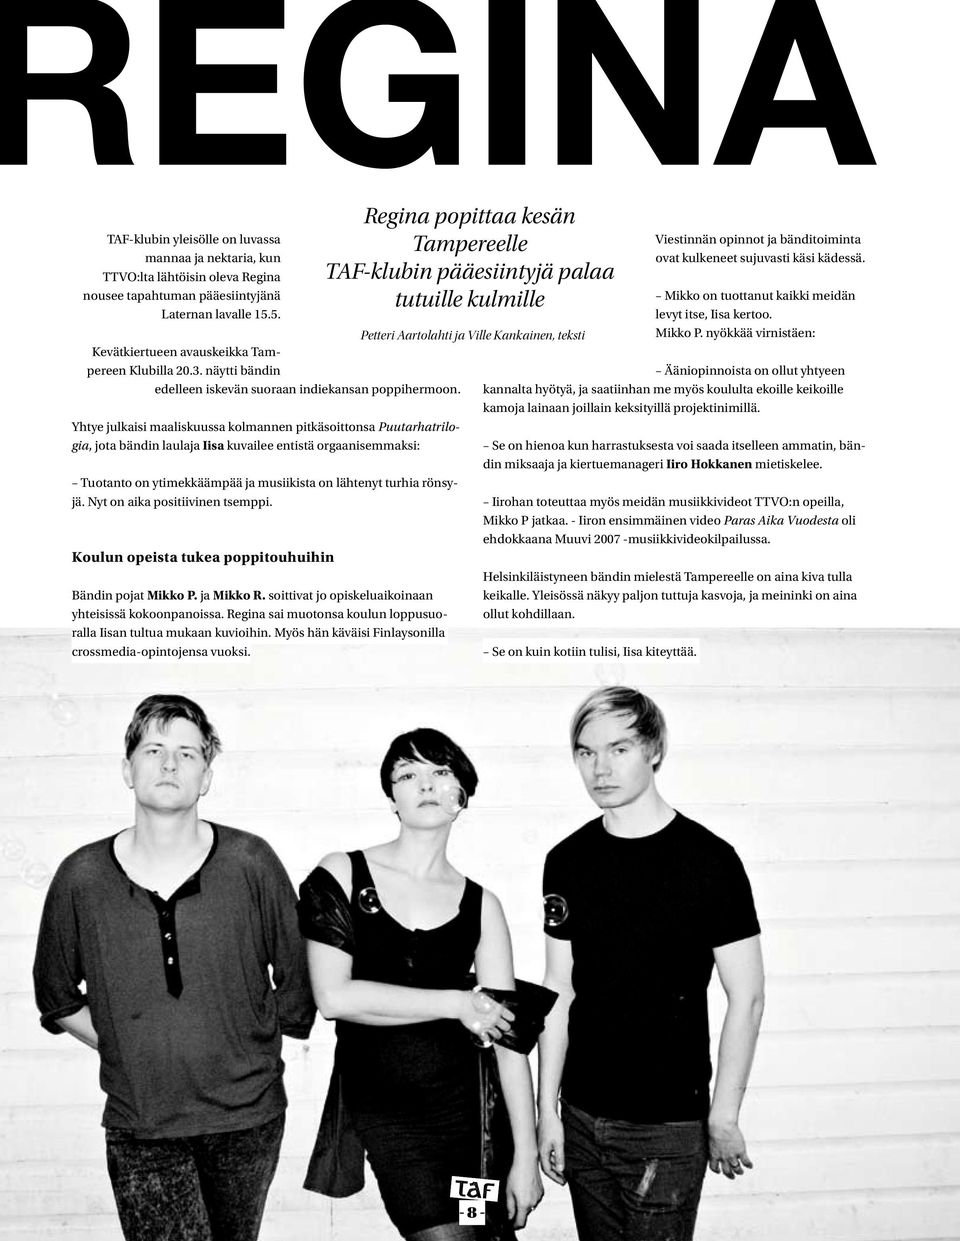 Yhtye julkaisi maaliskuussa kolmannen pitkäsoittonsa Puutarhatrilogia, jota bändin laulaja Iisa kuvailee entistä orgaanisemmaksi: Tuotanto on ytimekkäämpää ja musiikista on lähtenyt turhia rönsyjä.